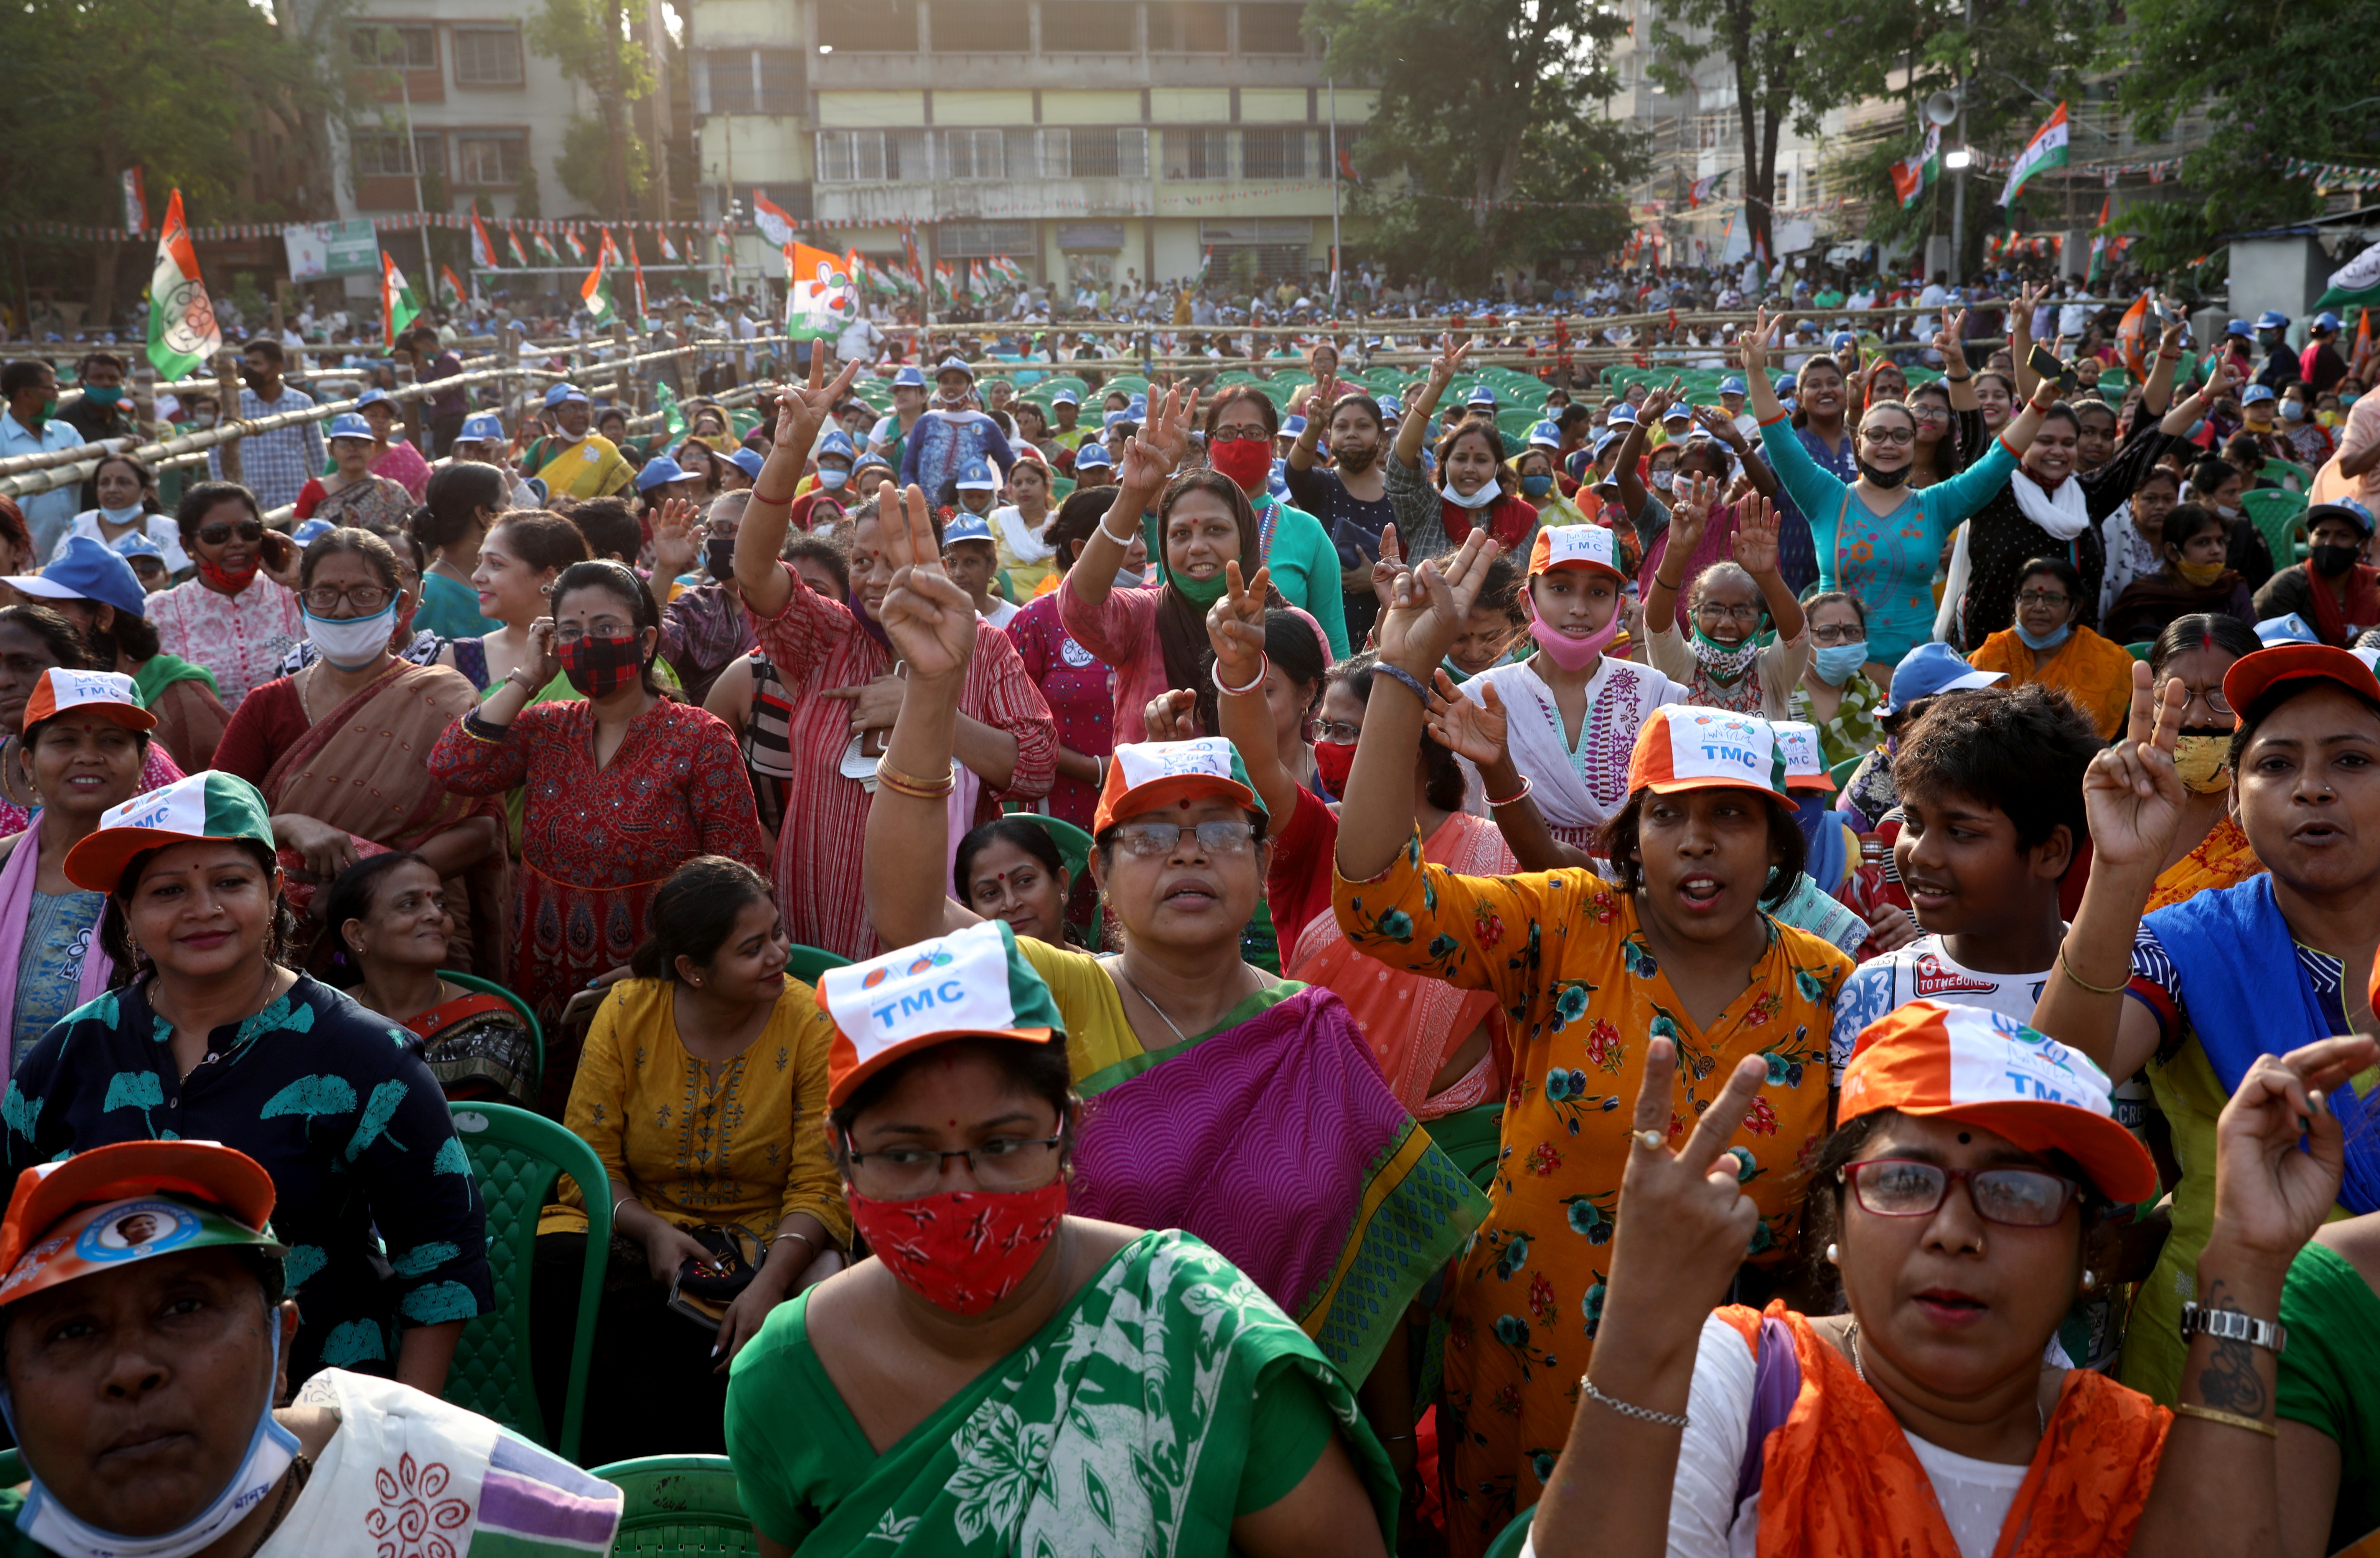 Simpatizantes de la ministra principal del estado oriental de Bengala Occidental, Mamata Banerjee, asisten a un mitin de la campaña electoral antes de la cuarta fase de las elecciones estatales en Calcuta, el 7 de abril de 2021 (REUTERS/Rupak De Chowdhuri)